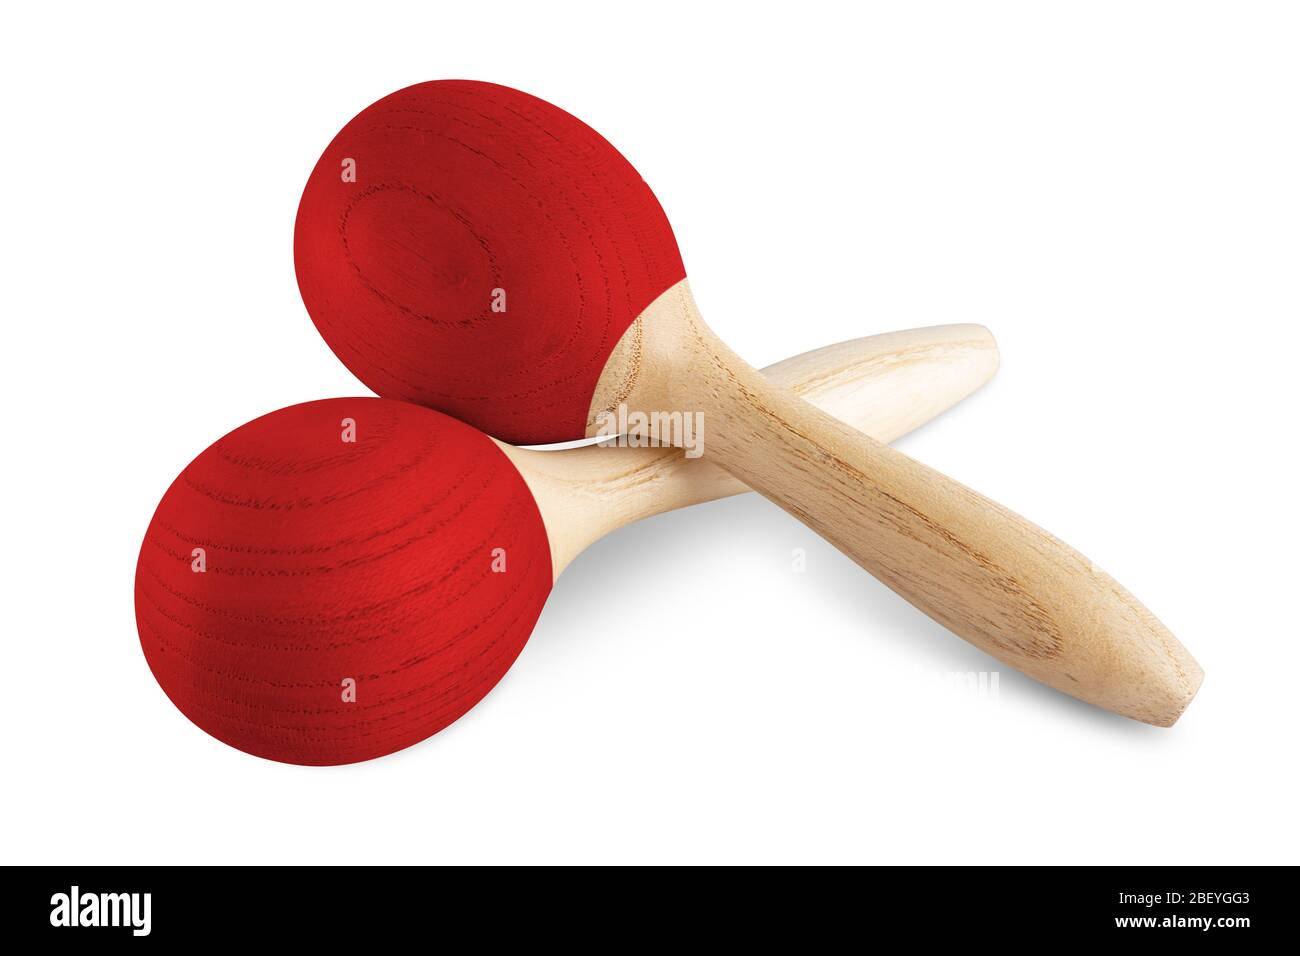 Paire de maracas en bois rouge shaker musique instrument isolé sur fond blanc. Cliquetis percussion carnaval rythm concept de fête. Banque D'Images